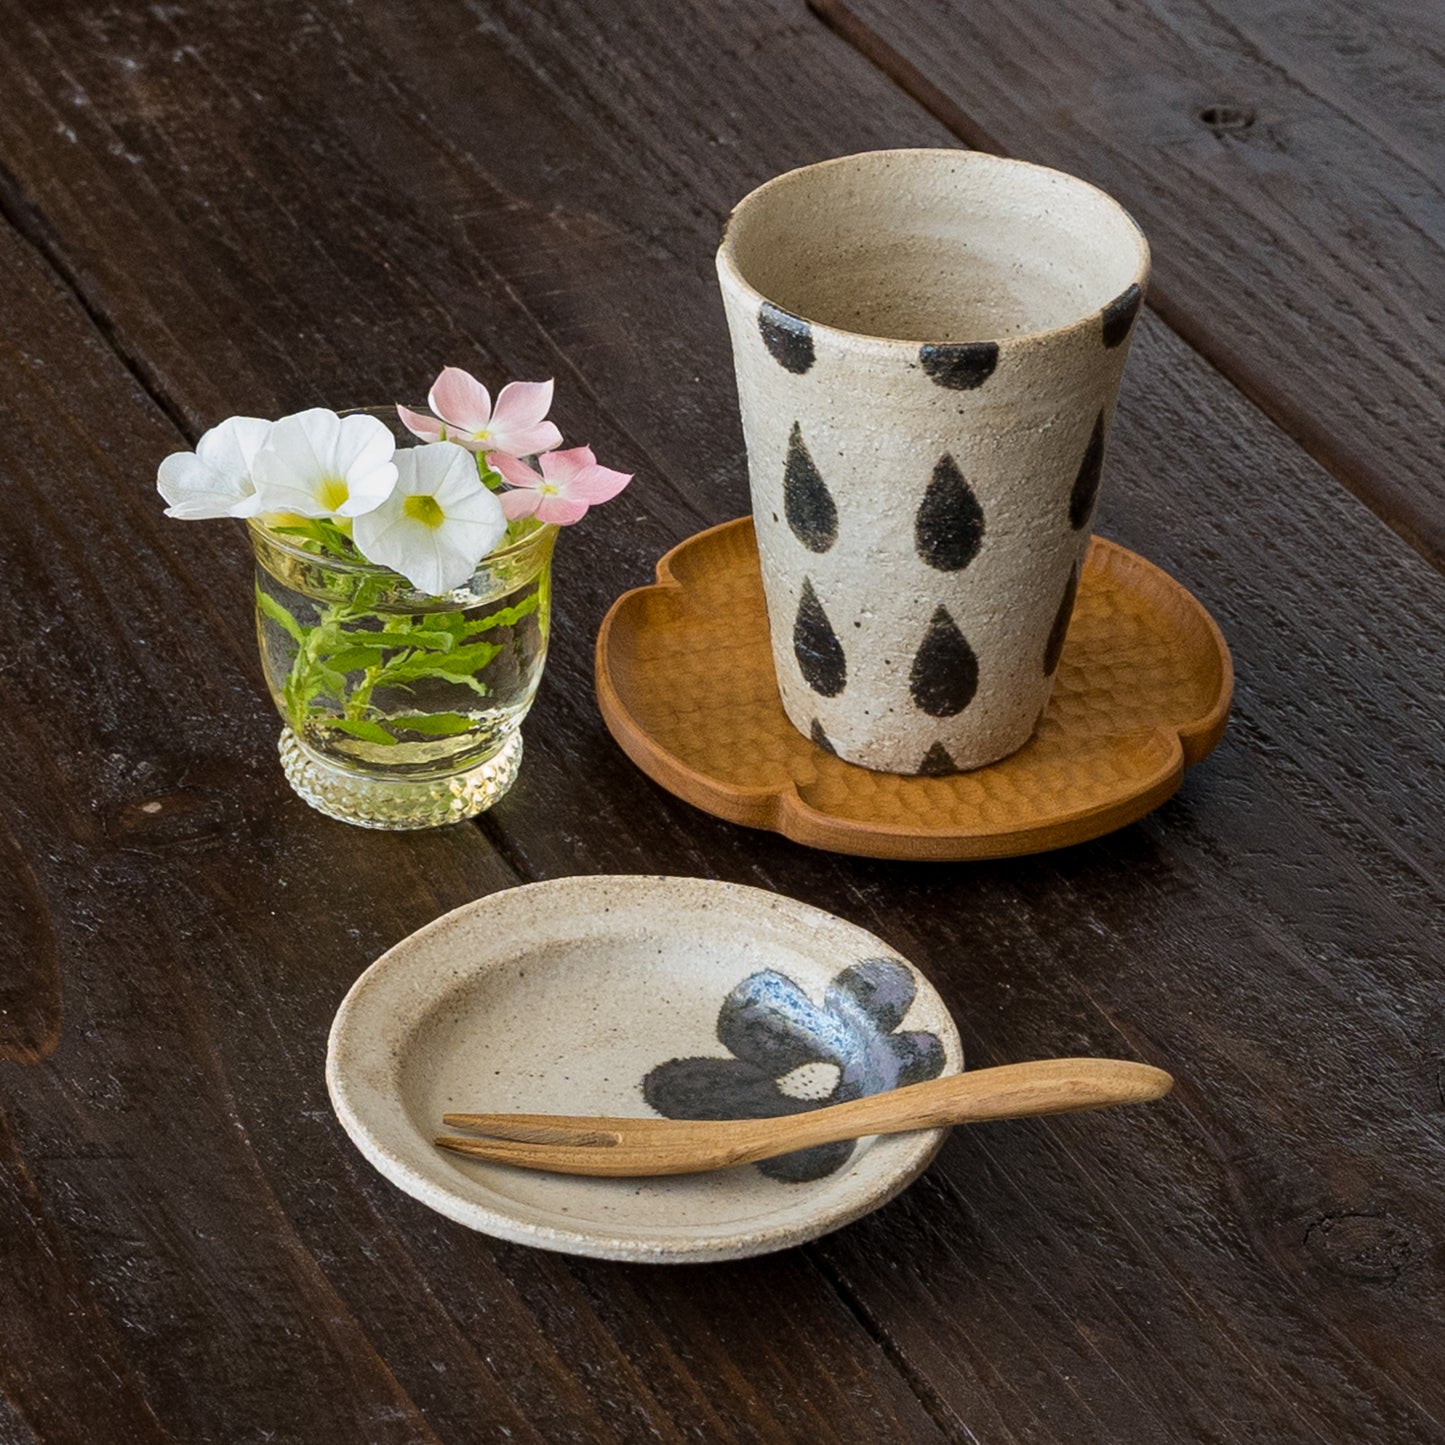 来客のおもてなし用にも使いたくなる岡村朝子さんのフリーカップとミニ丸皿